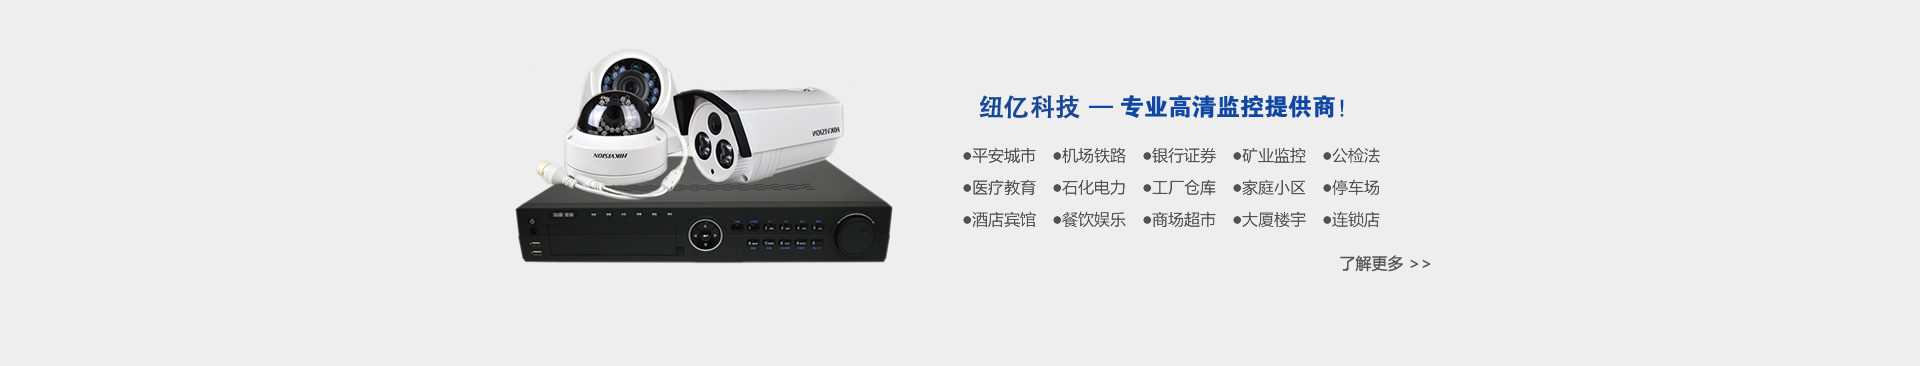 黑龙江省纽亿科技开发有限公司,专业高清监控提供商!